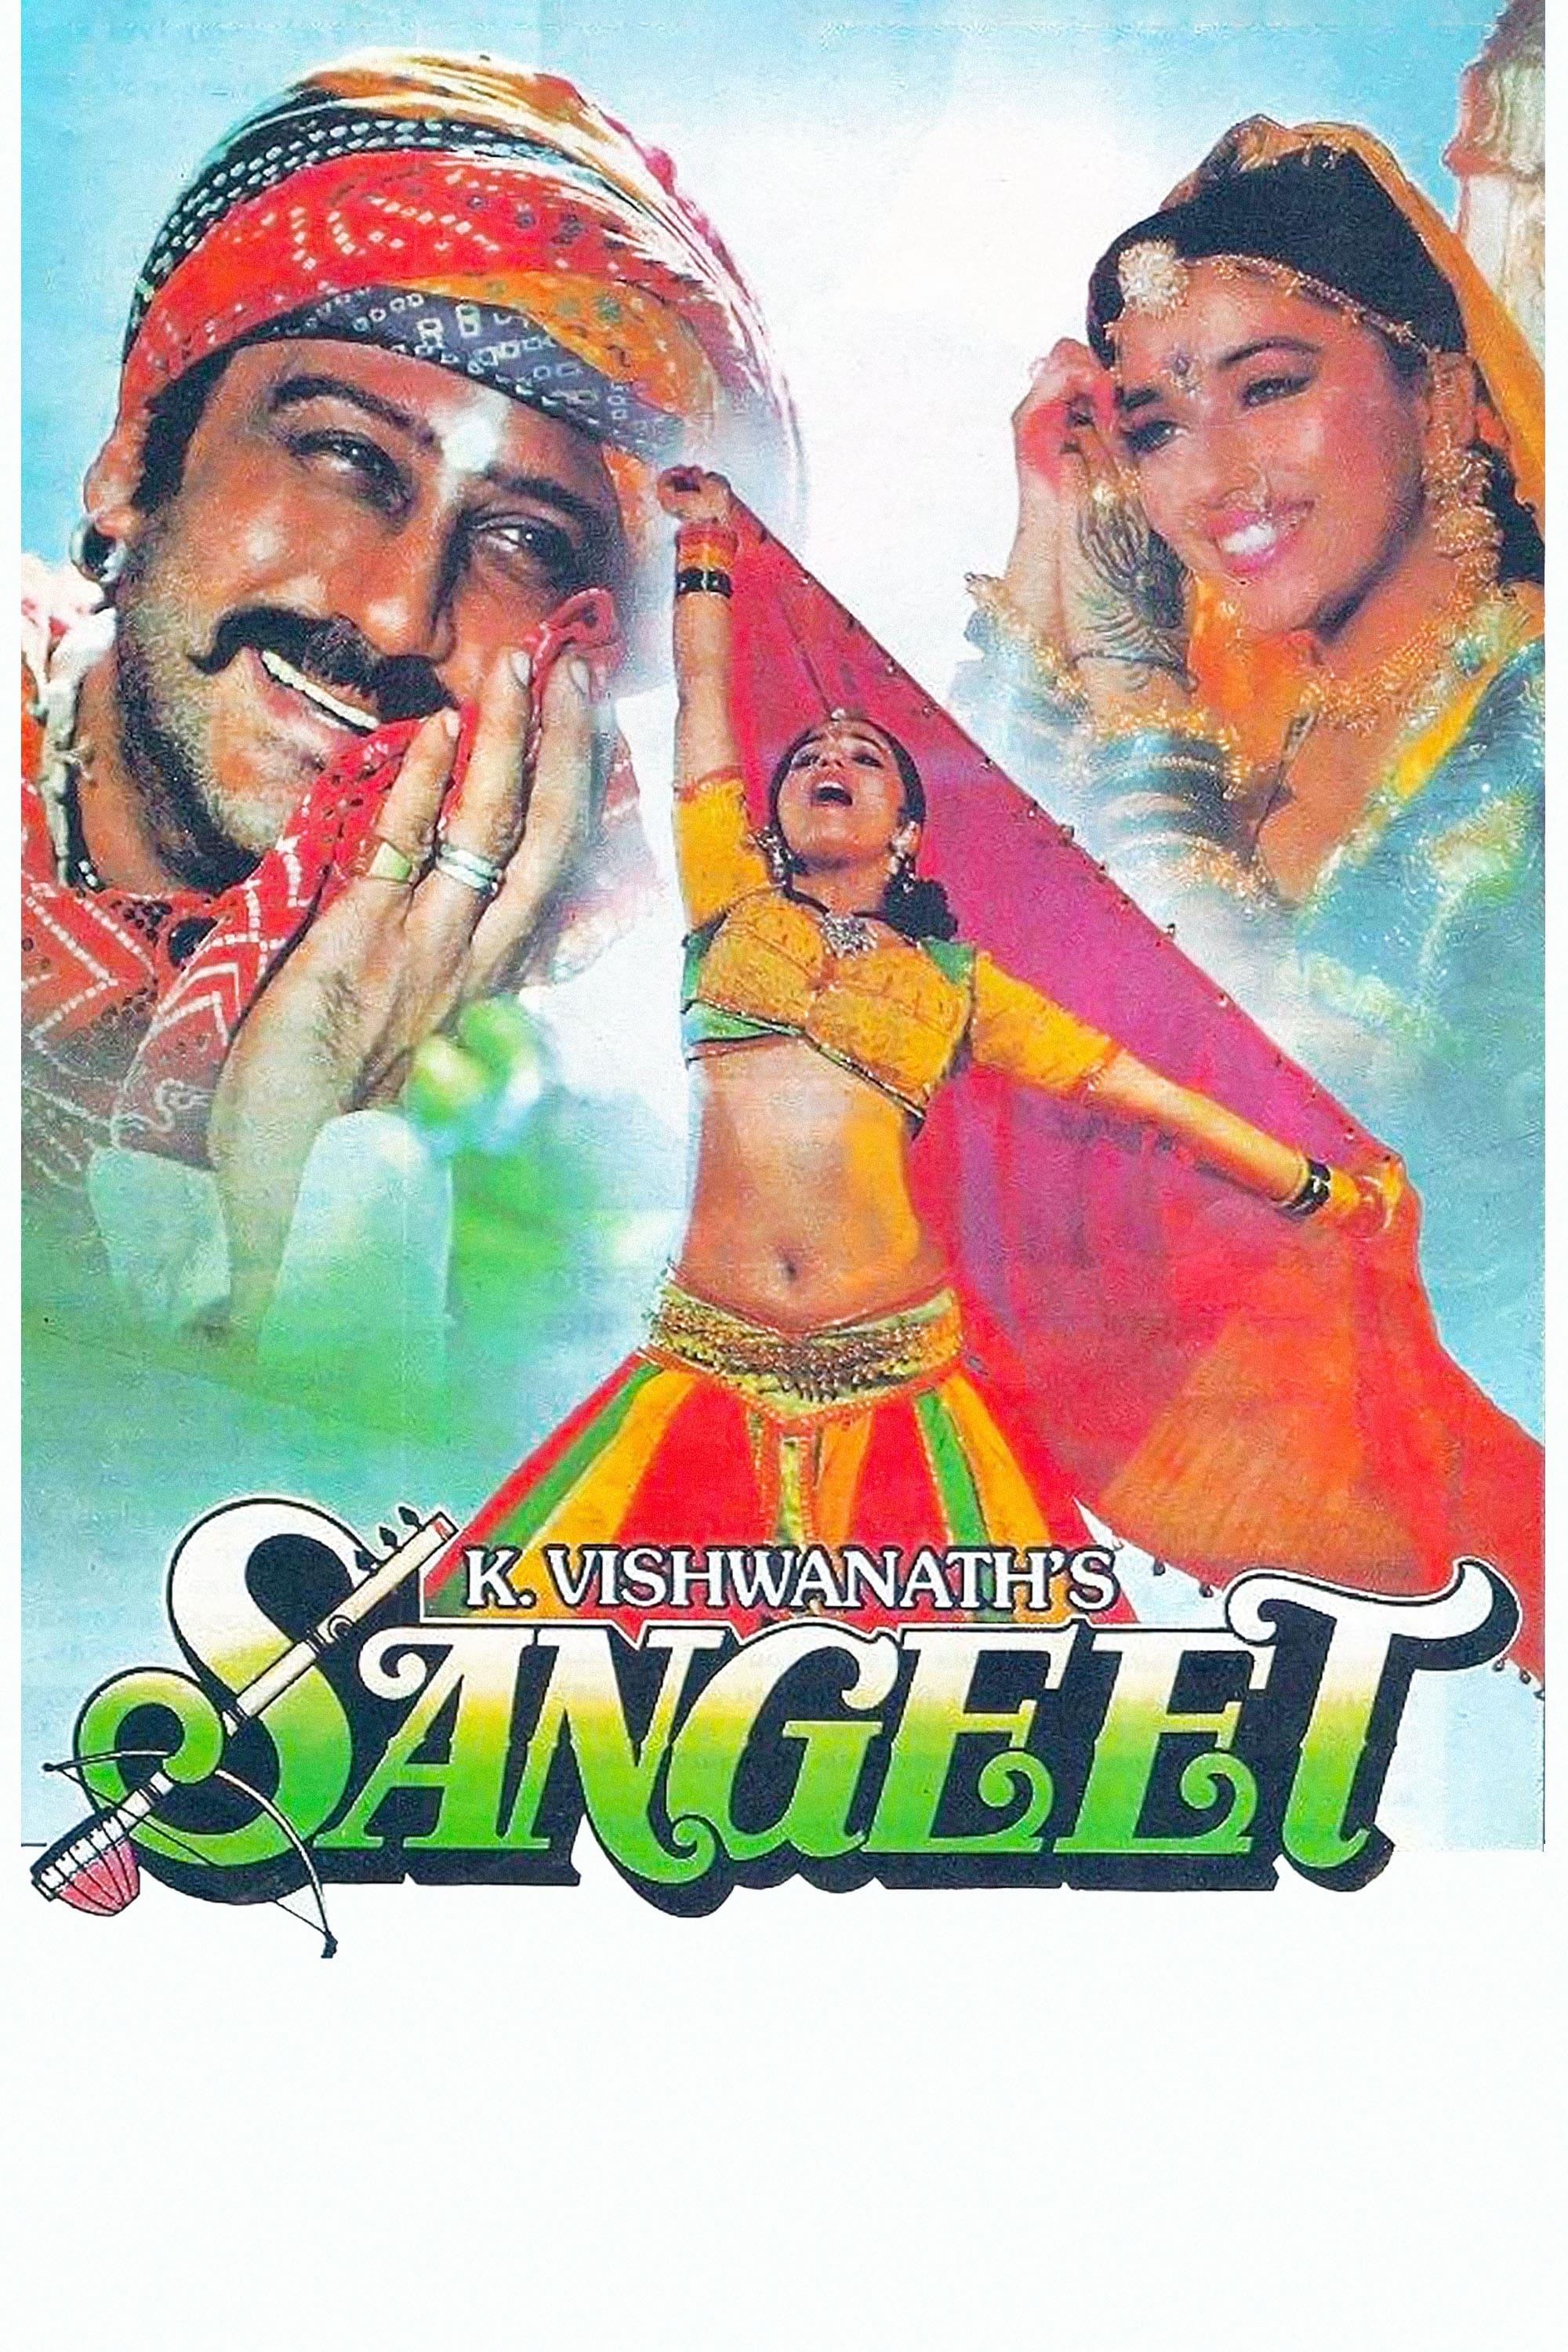 Sangeet poster